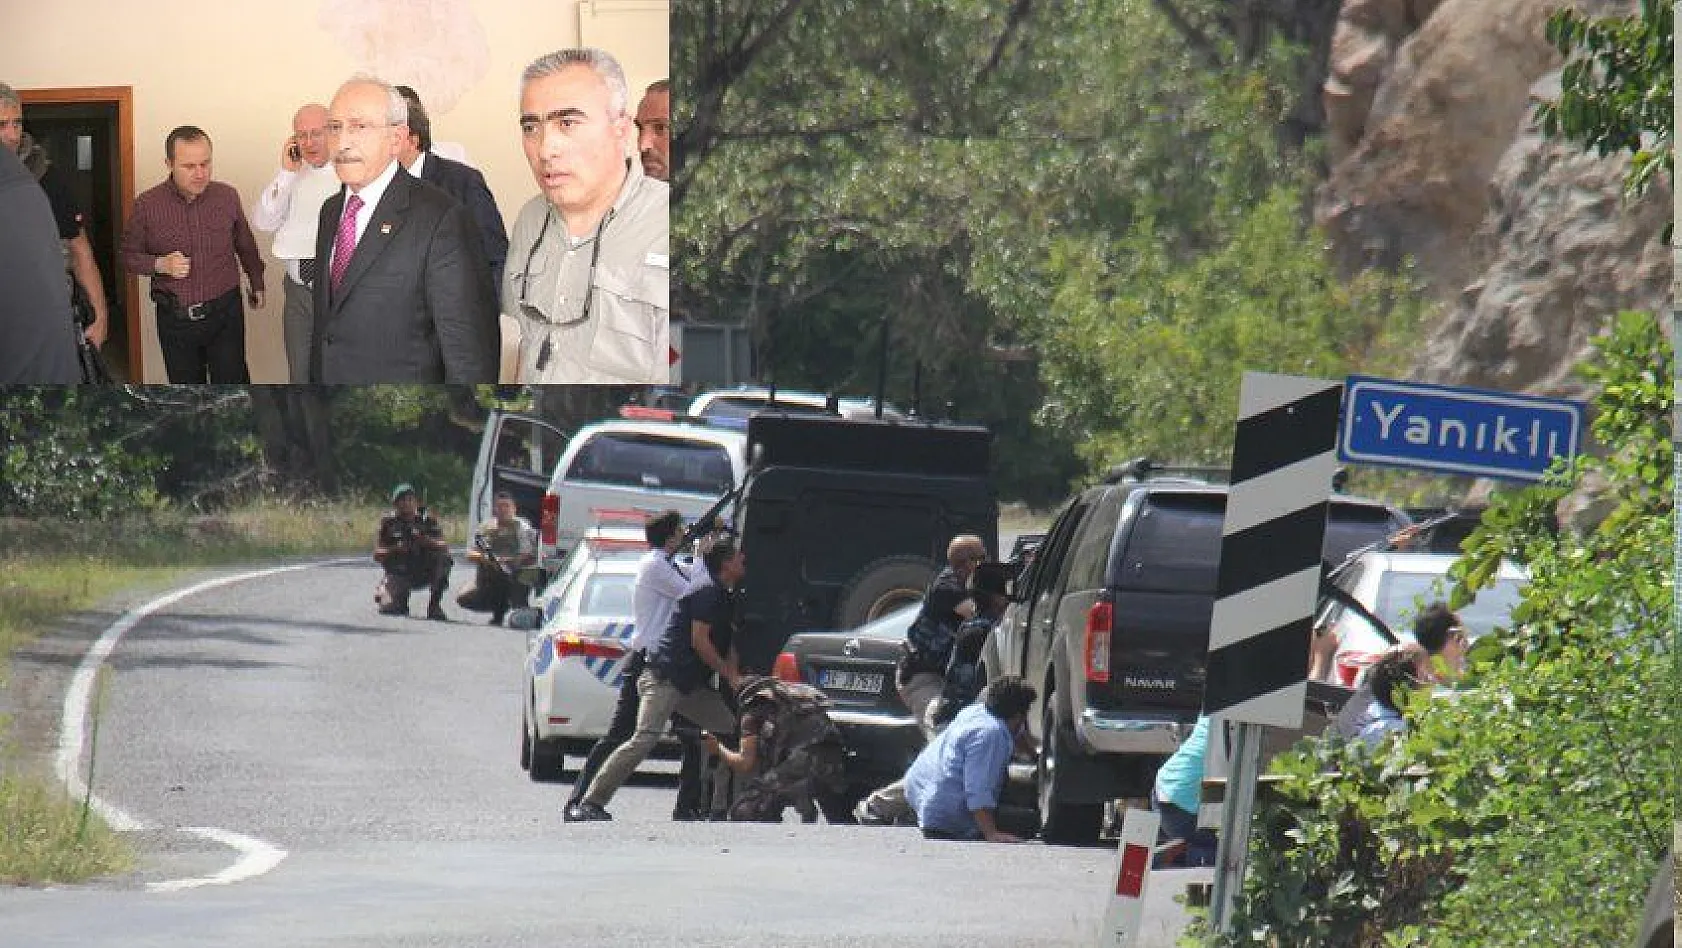 CHP Lideri Kılıçdaroğlu'nun konvoyuna silahlı saldırı: 1 şehit, 2 yaralı